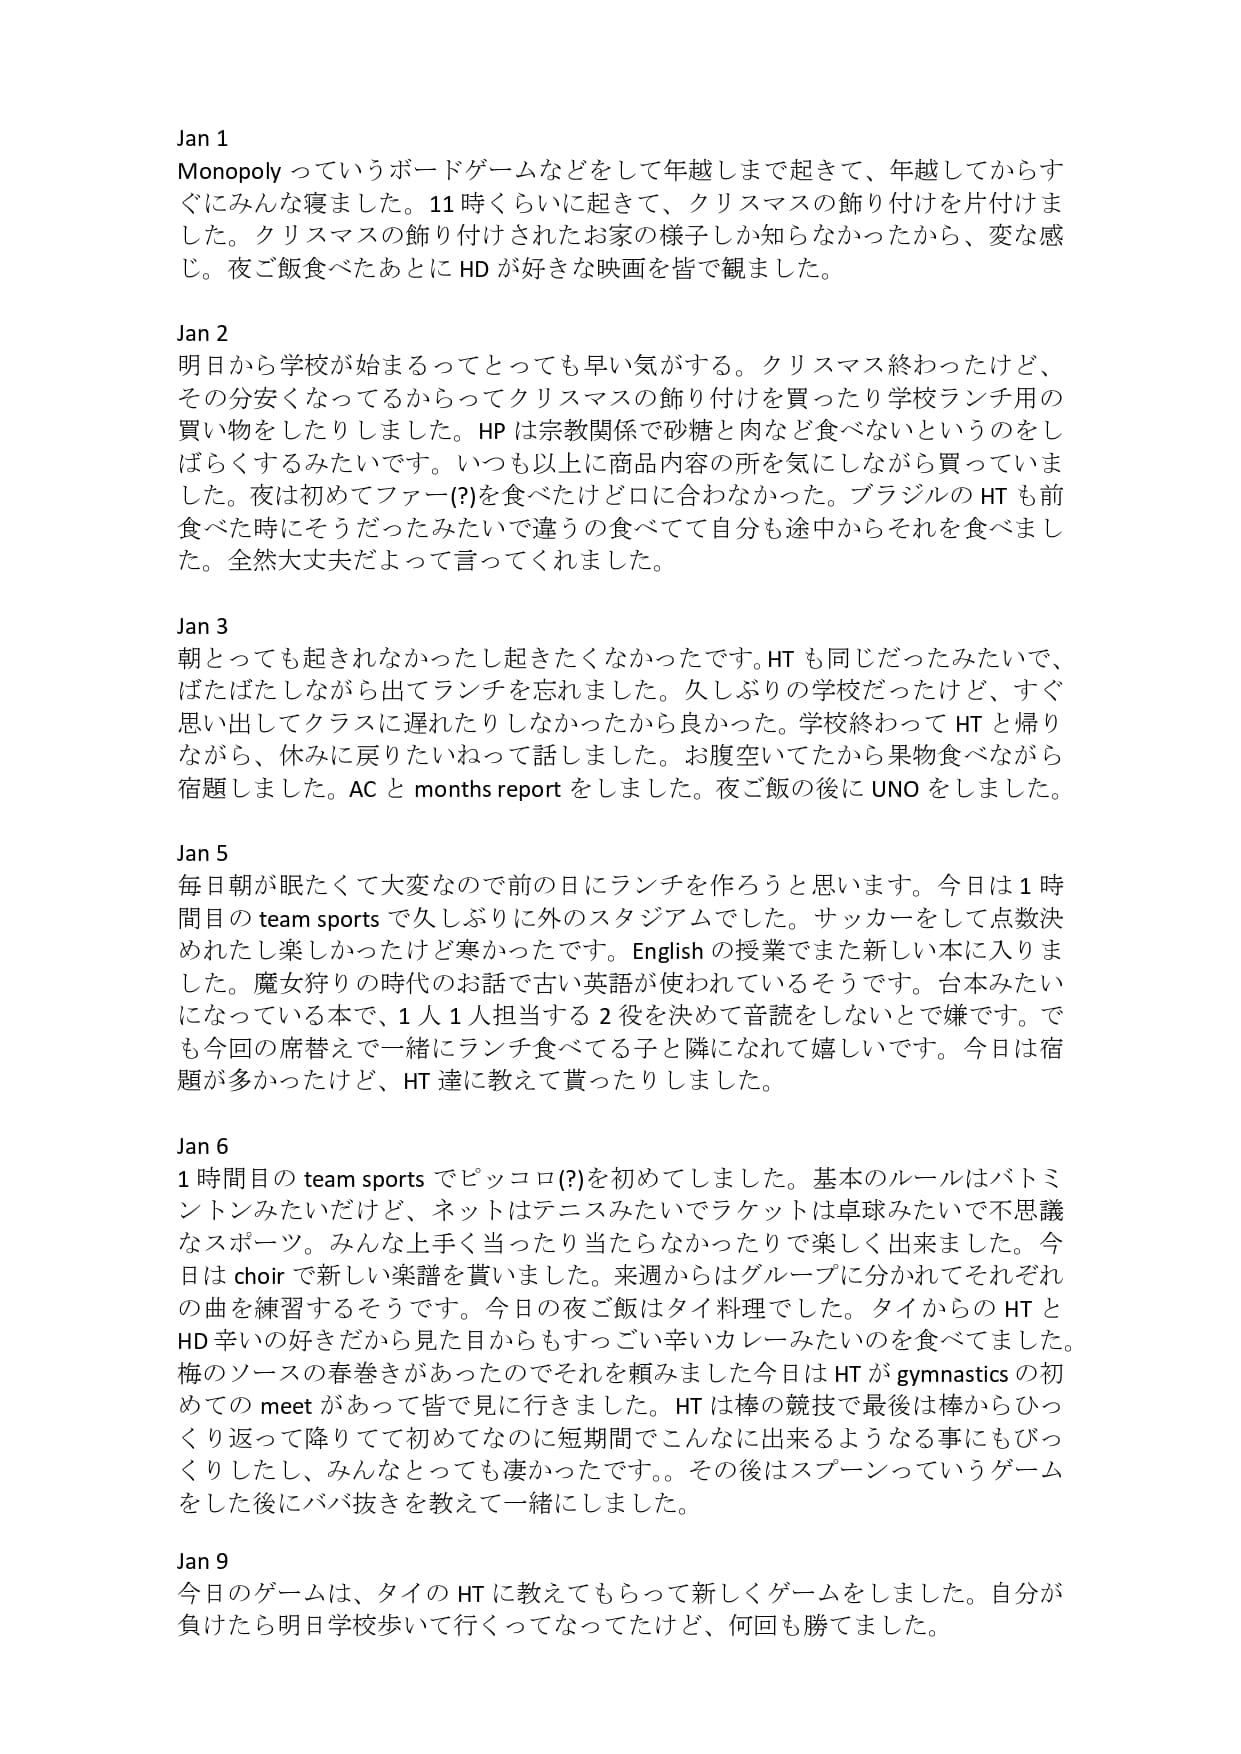 ユノの1月のStudent Report